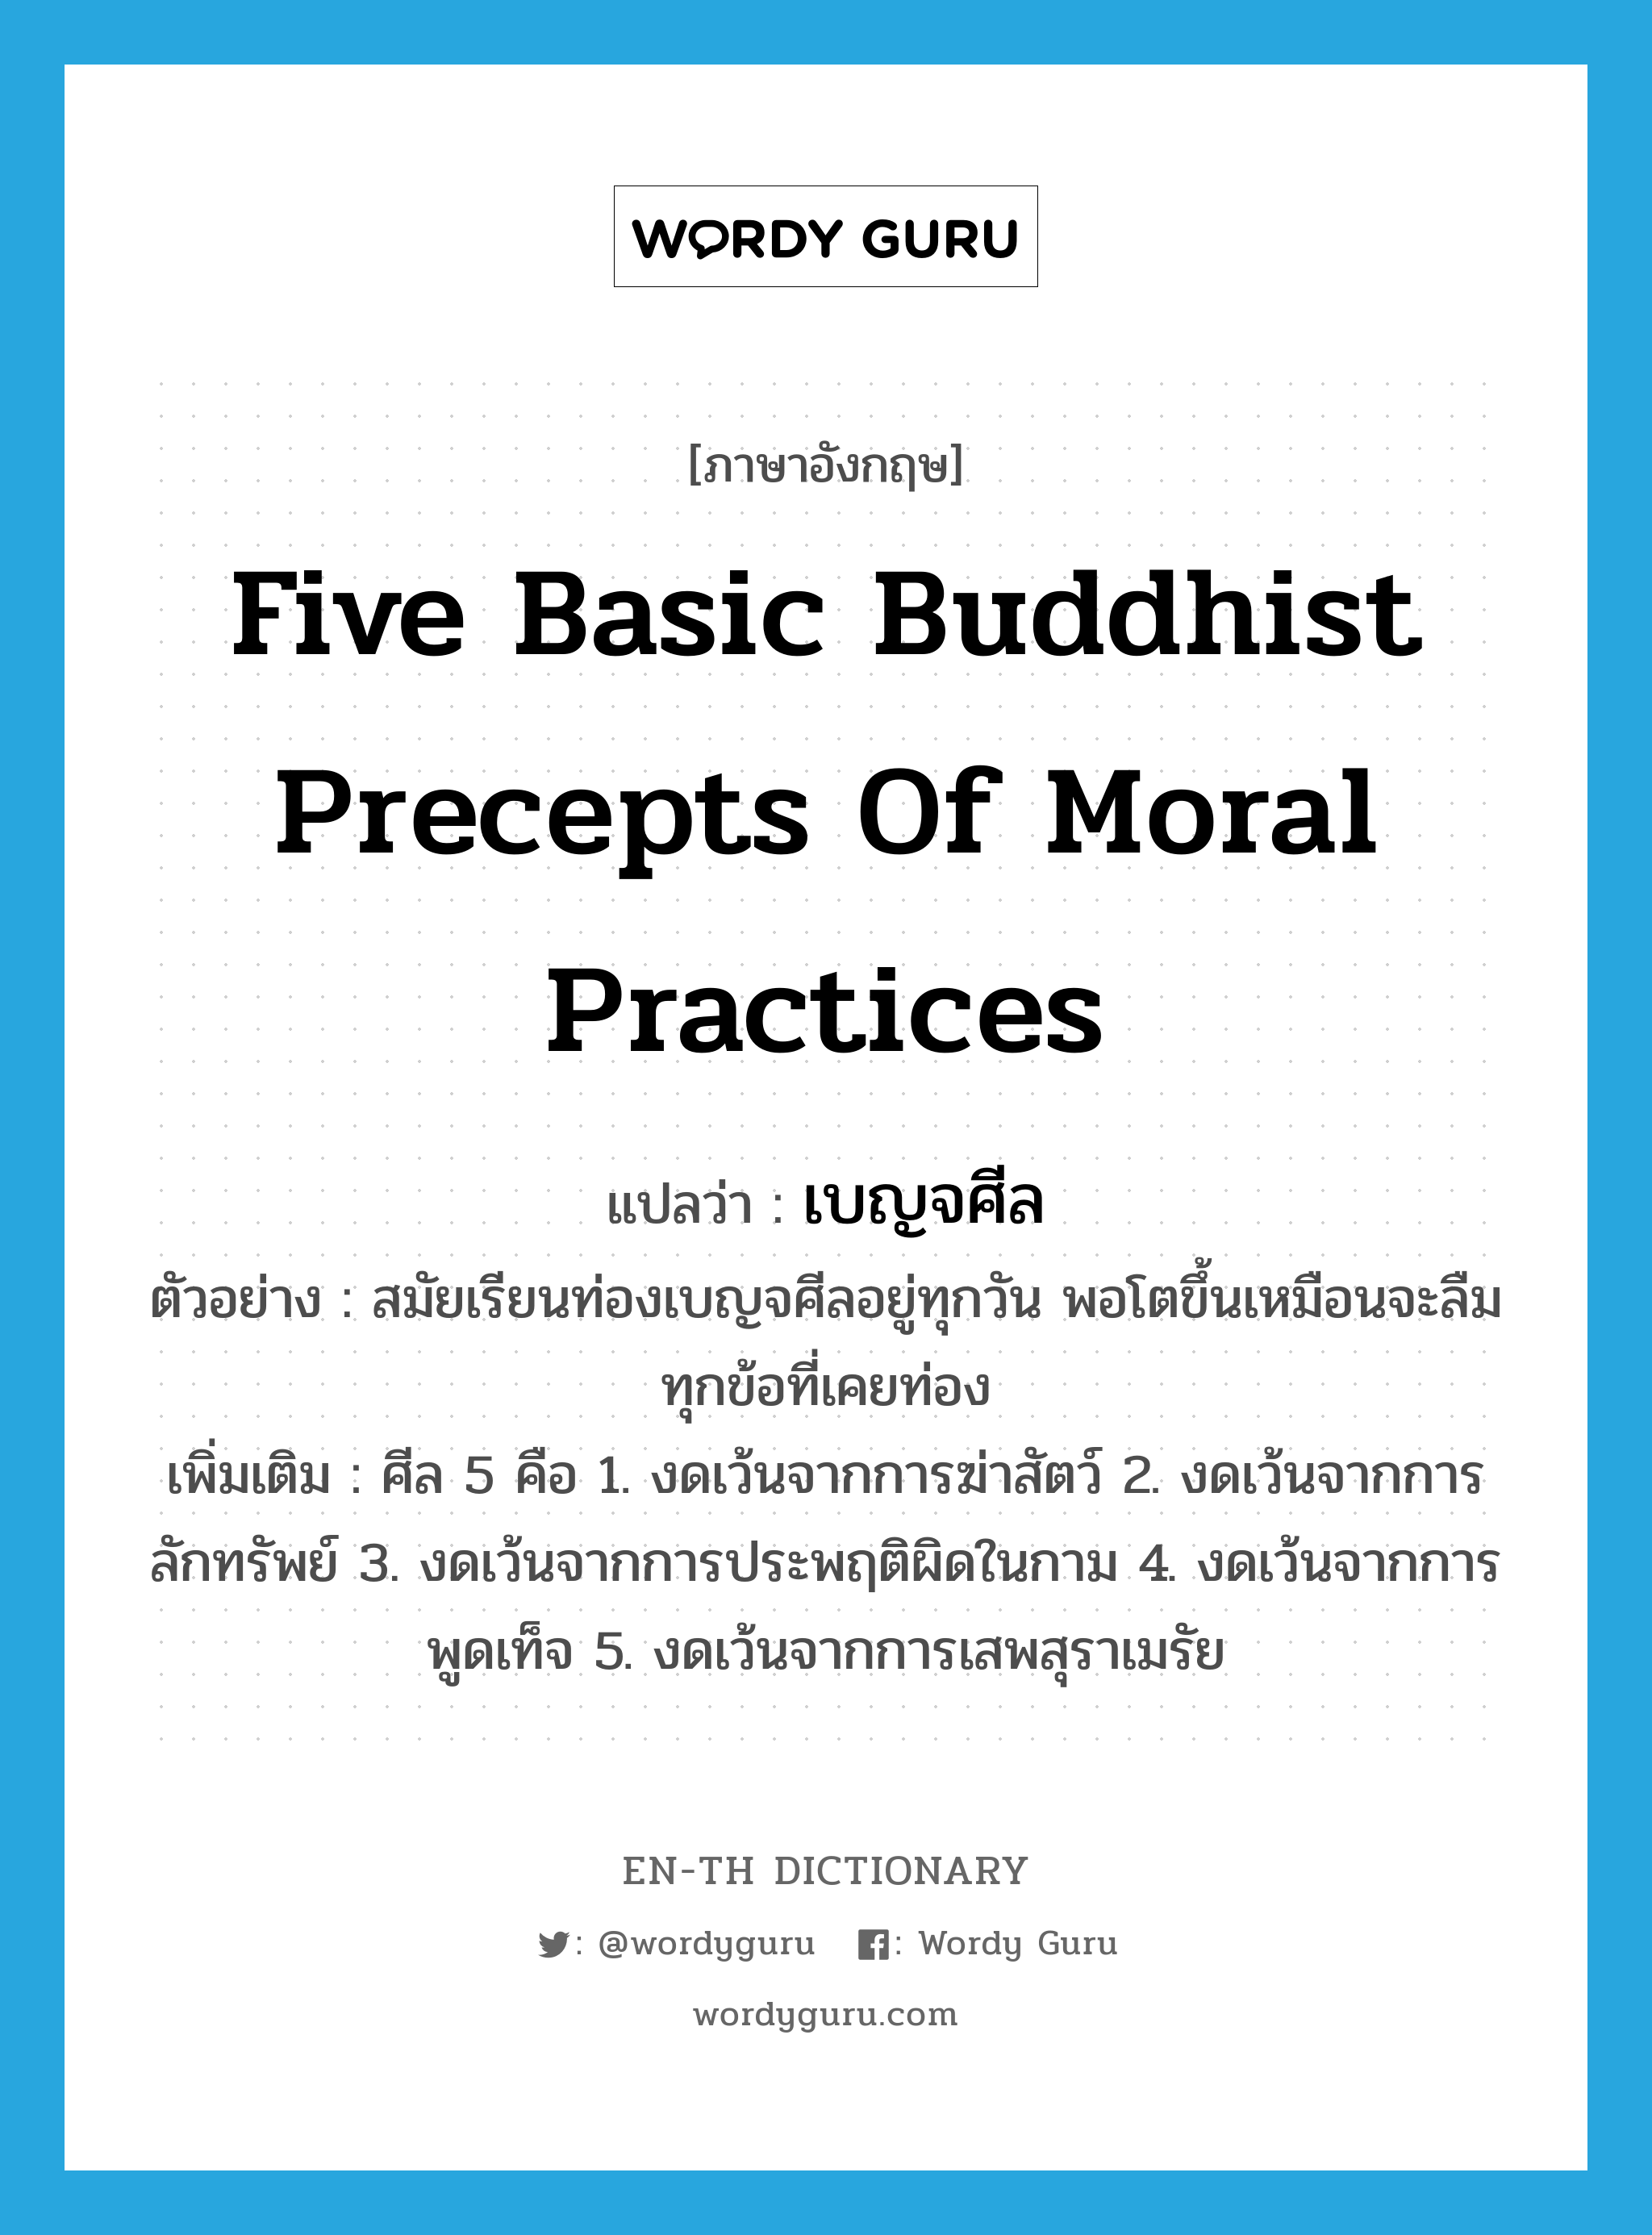 five basic Buddhist precepts of moral practices แปลว่า?, คำศัพท์ภาษาอังกฤษ five basic Buddhist precepts of moral practices แปลว่า เบญจศีล ประเภท N ตัวอย่าง สมัยเรียนท่องเบญจศีลอยู่ทุกวัน พอโตขึ้นเหมือนจะลืมทุกข้อที่เคยท่อง เพิ่มเติม ศีล 5 คือ 1. งดเว้นจากการฆ่าสัตว์ 2. งดเว้นจากการลักทรัพย์ 3. งดเว้นจากการประพฤติผิดในกาม 4. งดเว้นจากการพูดเท็จ 5. งดเว้นจากการเสพสุราเมรัย หมวด N